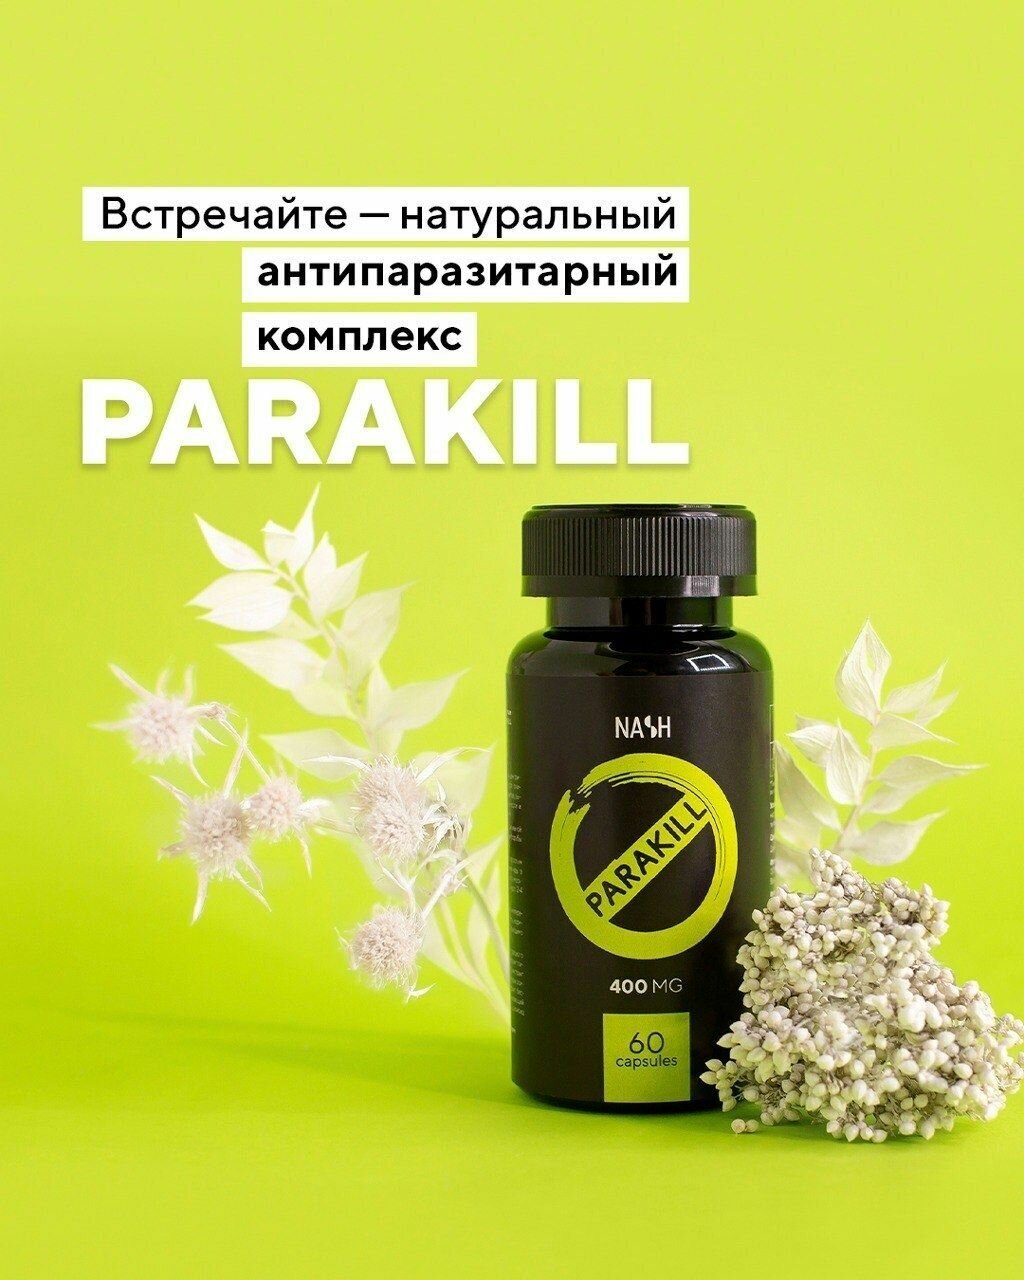 Натуральный антипаразитарный комплекс PARAKILL из растительных экстрактов / NASH Tayga8 Vilavi 60 капсул